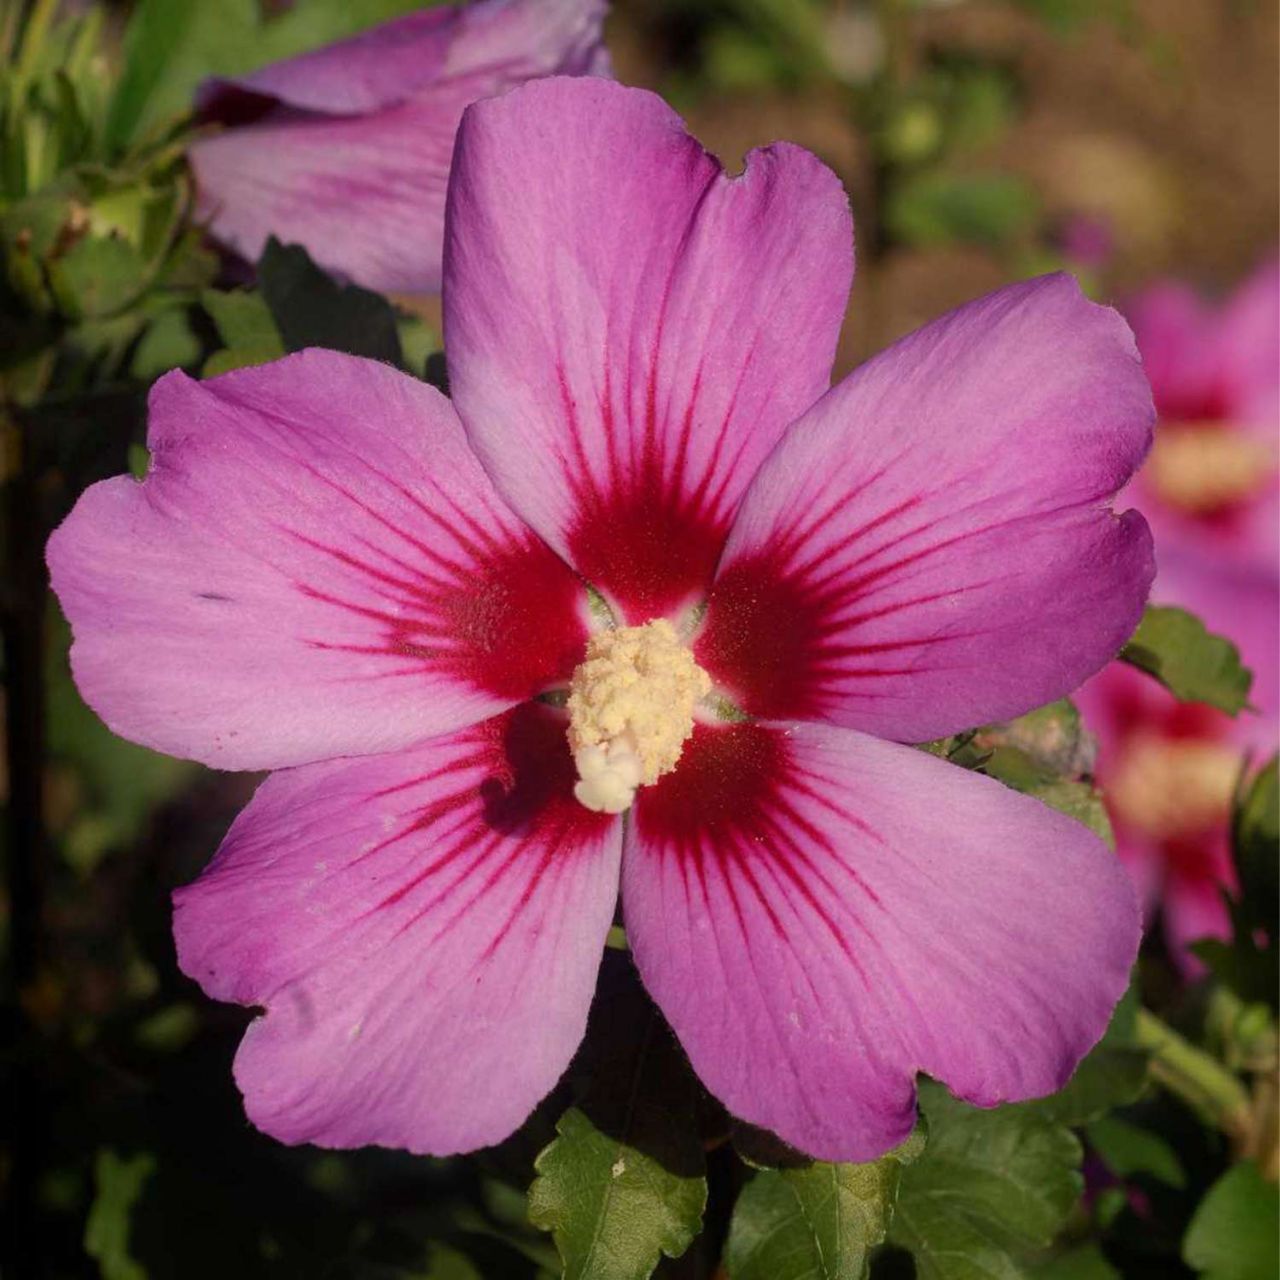 Kategorie <b>Blütensträucher und Ziergehölze </b> - Garteneibisch 'Russian Violet®' - Hibiscus syriacus 'Russian Violet®'